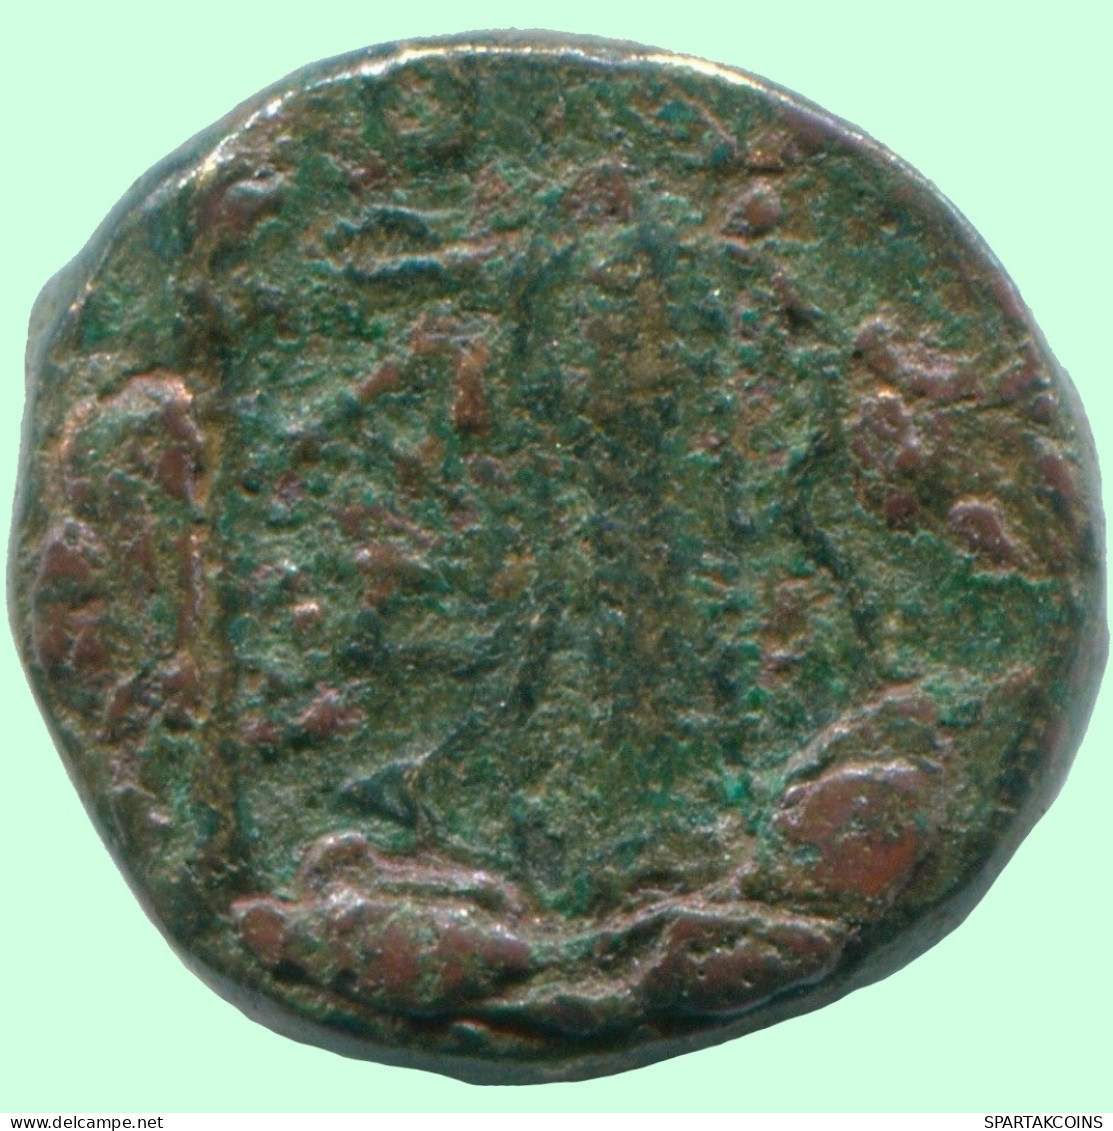 Authentic Original Ancient GREEK Coin #ANC12624.6.U.A - Griegas